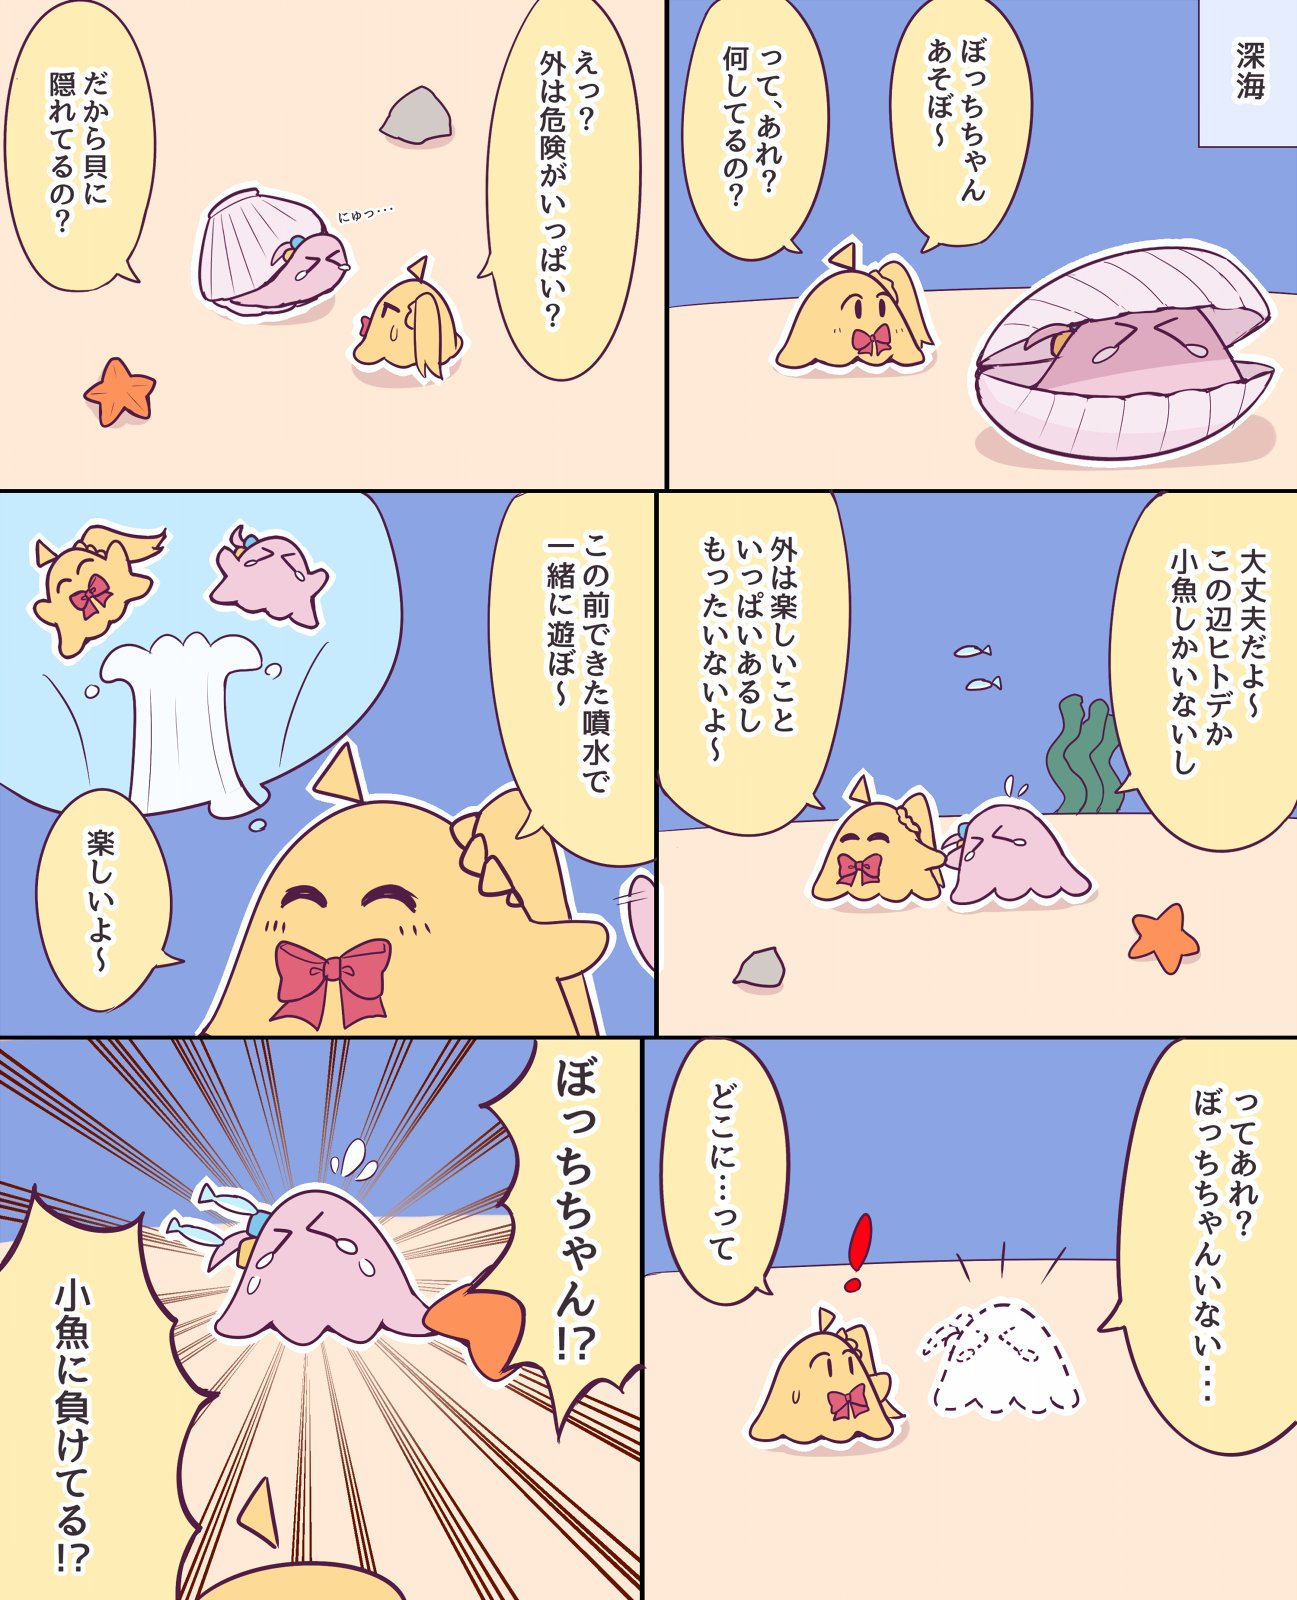 [孤獨] 小孤獨扁面蛸漫畫 -- 海裡的波虹